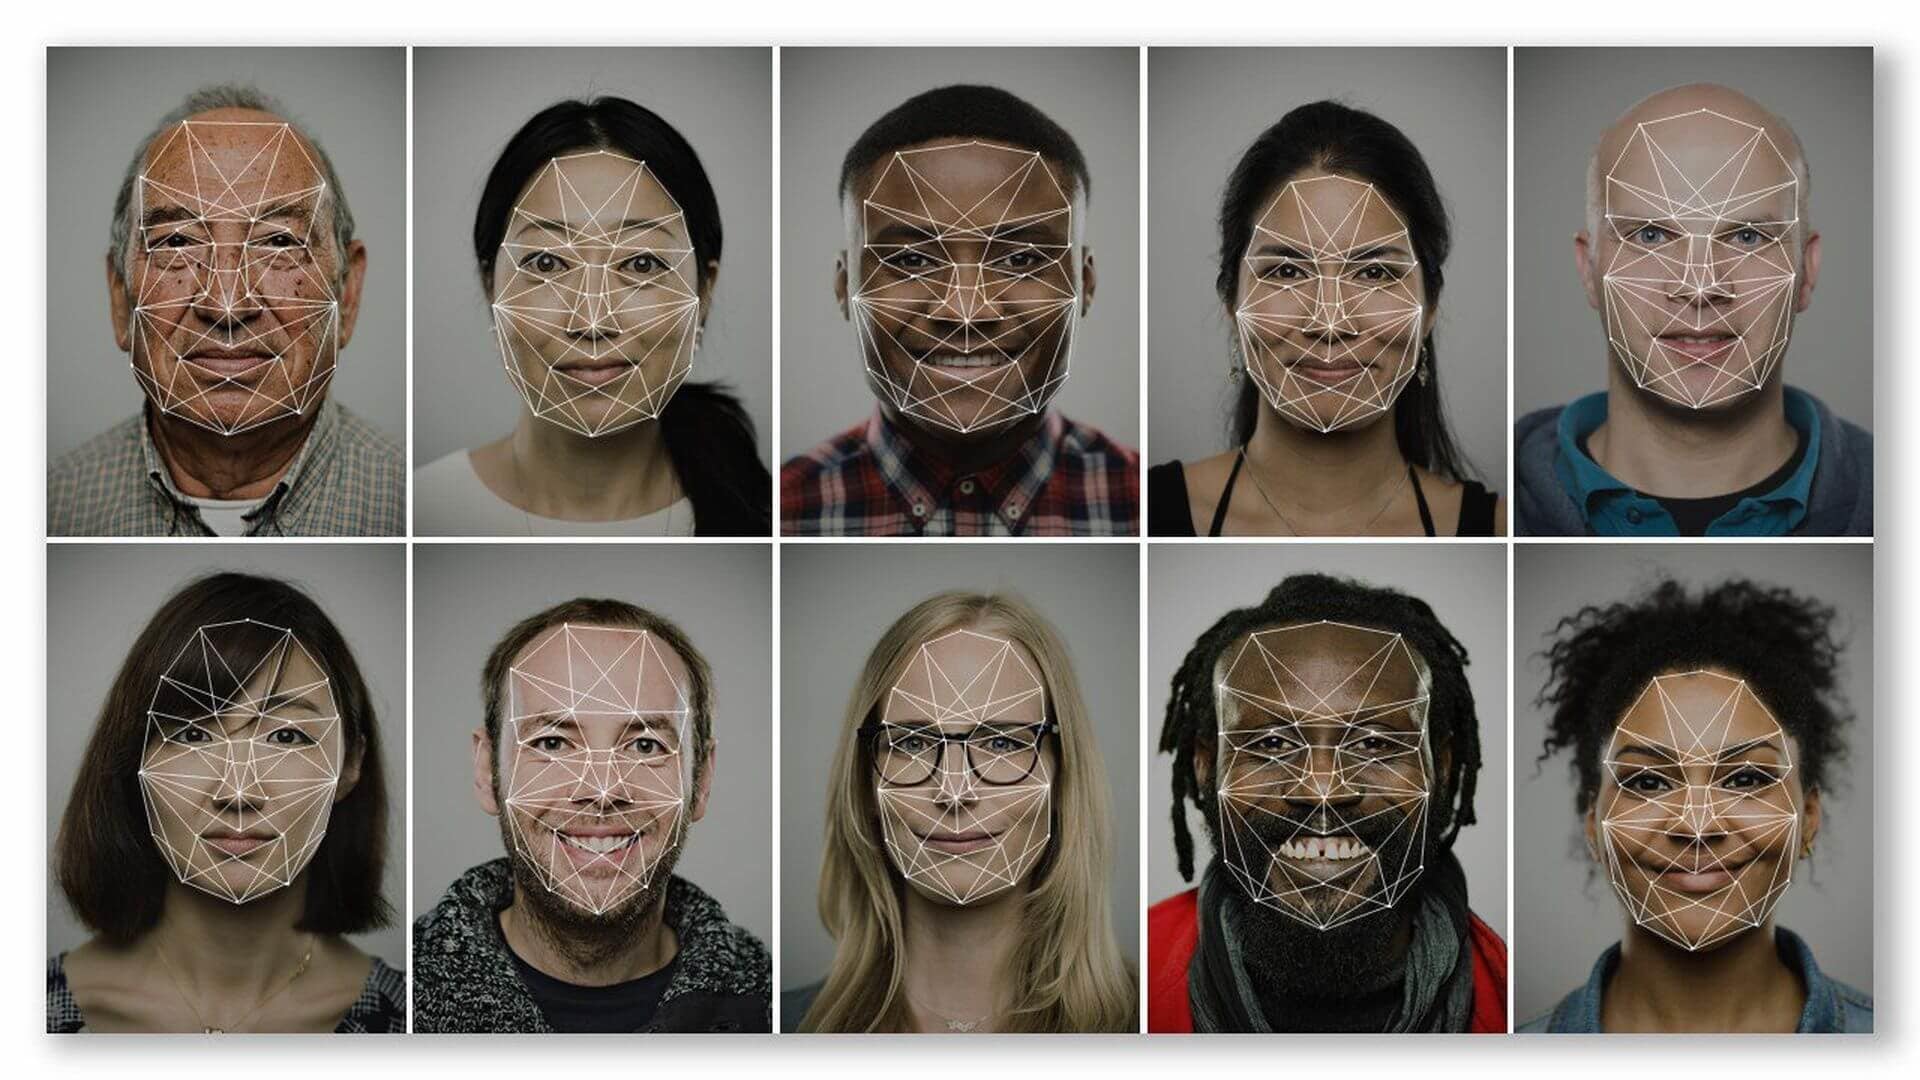 Смена лица на фото онлайн нейросеть